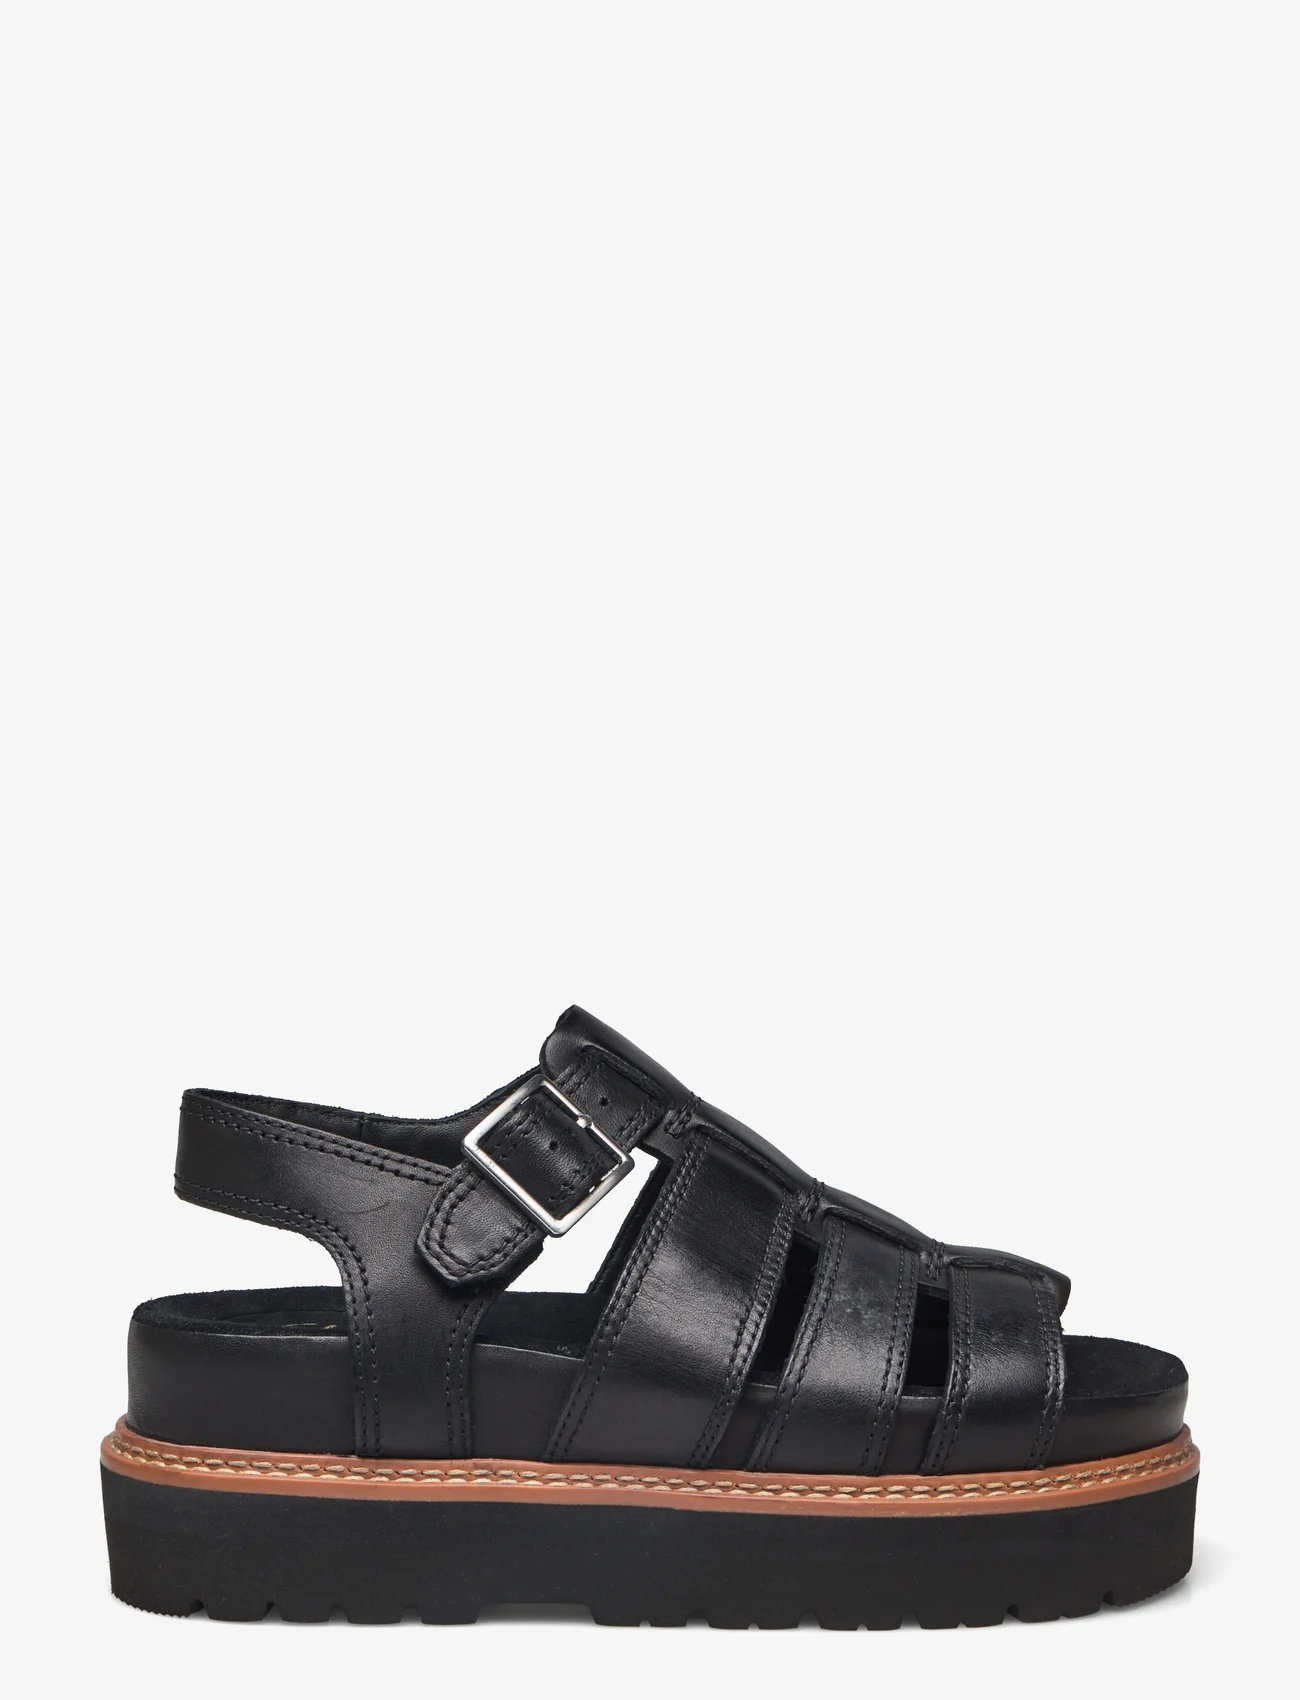 Clarks - Orianna Twist D - platform sandals - 1216 black leather - 1